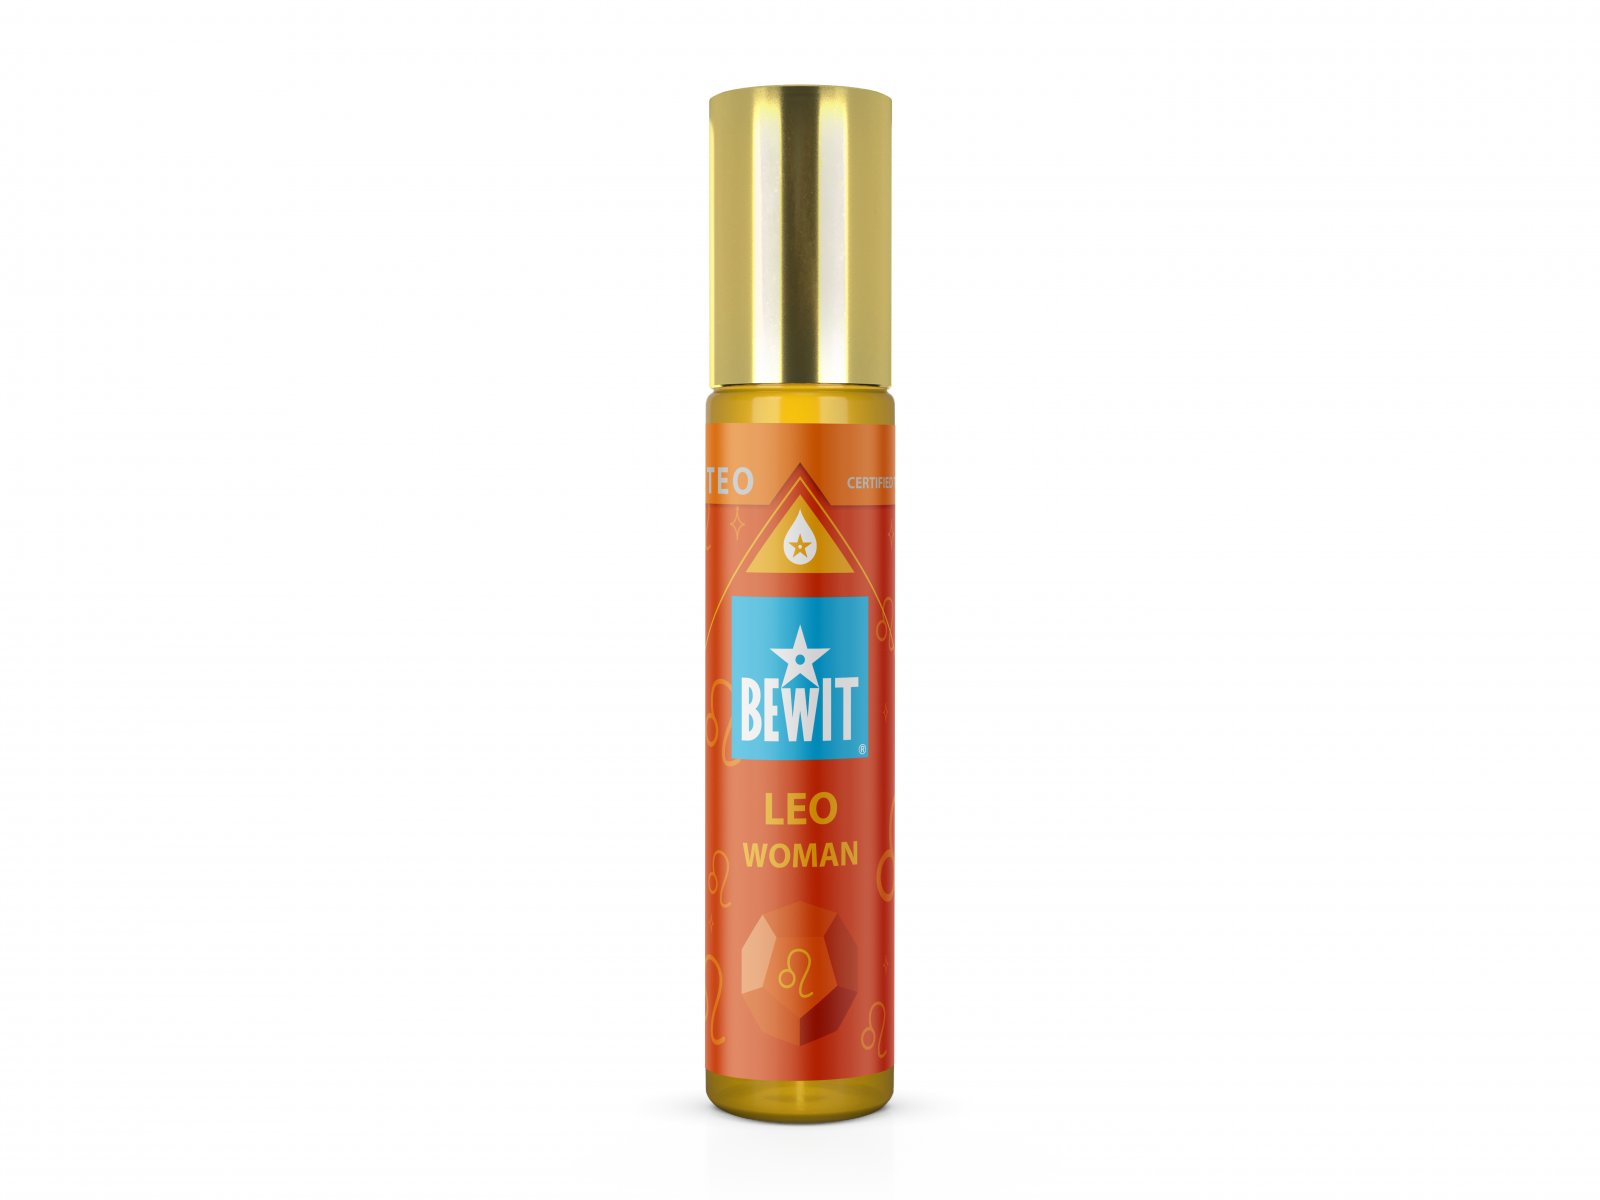 BEWIT WOMAN LEO (LEV) - Ženský roll-on olejový parfém - 1